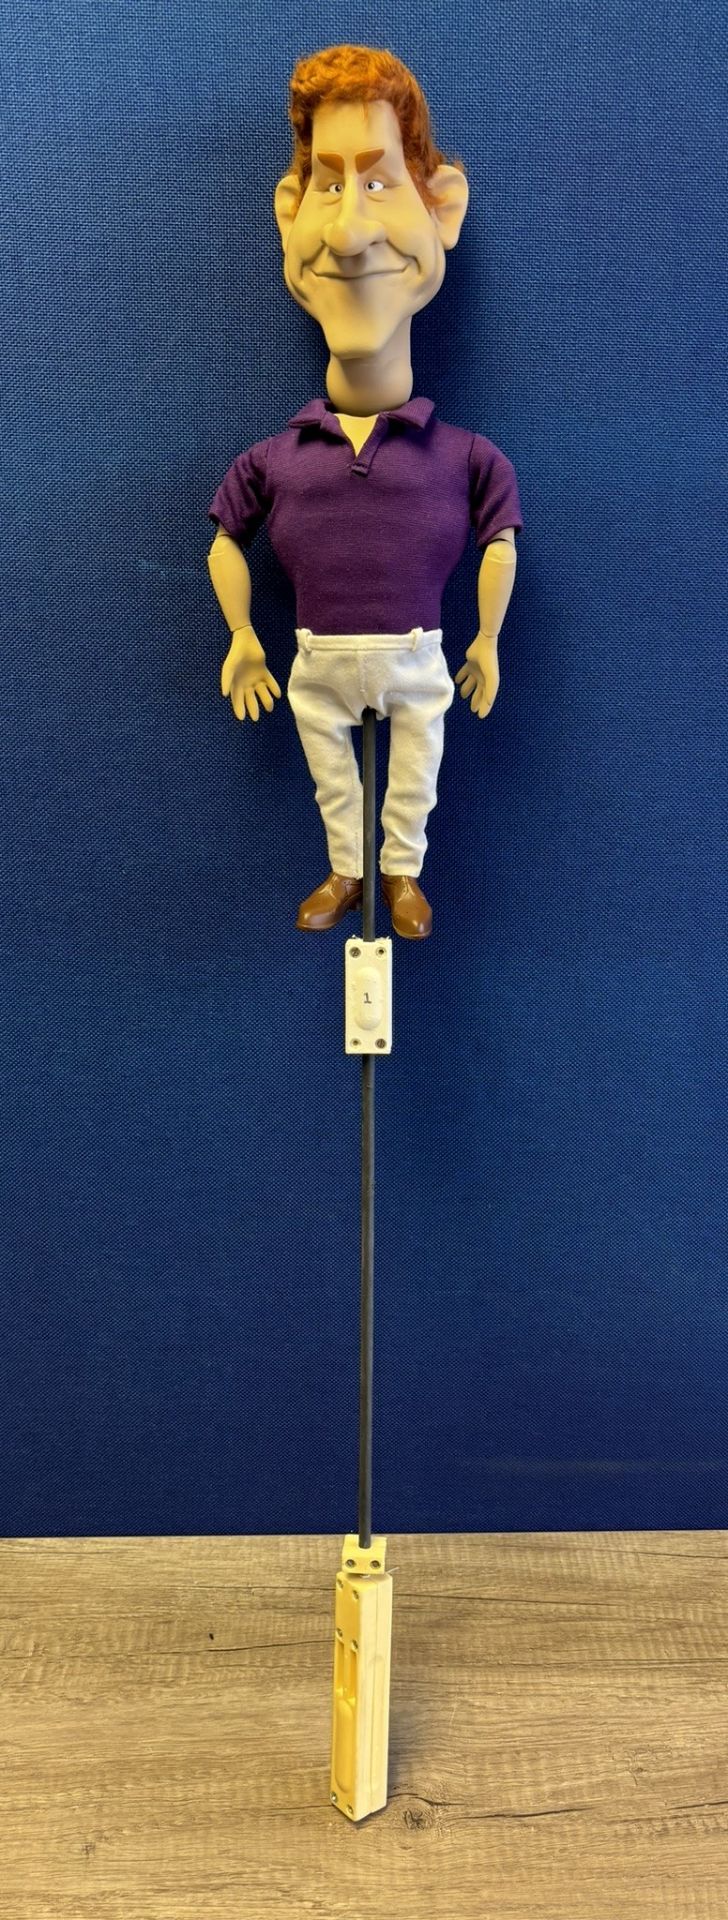 Newzoid puppet - Prince Harry - Bild 3 aus 4